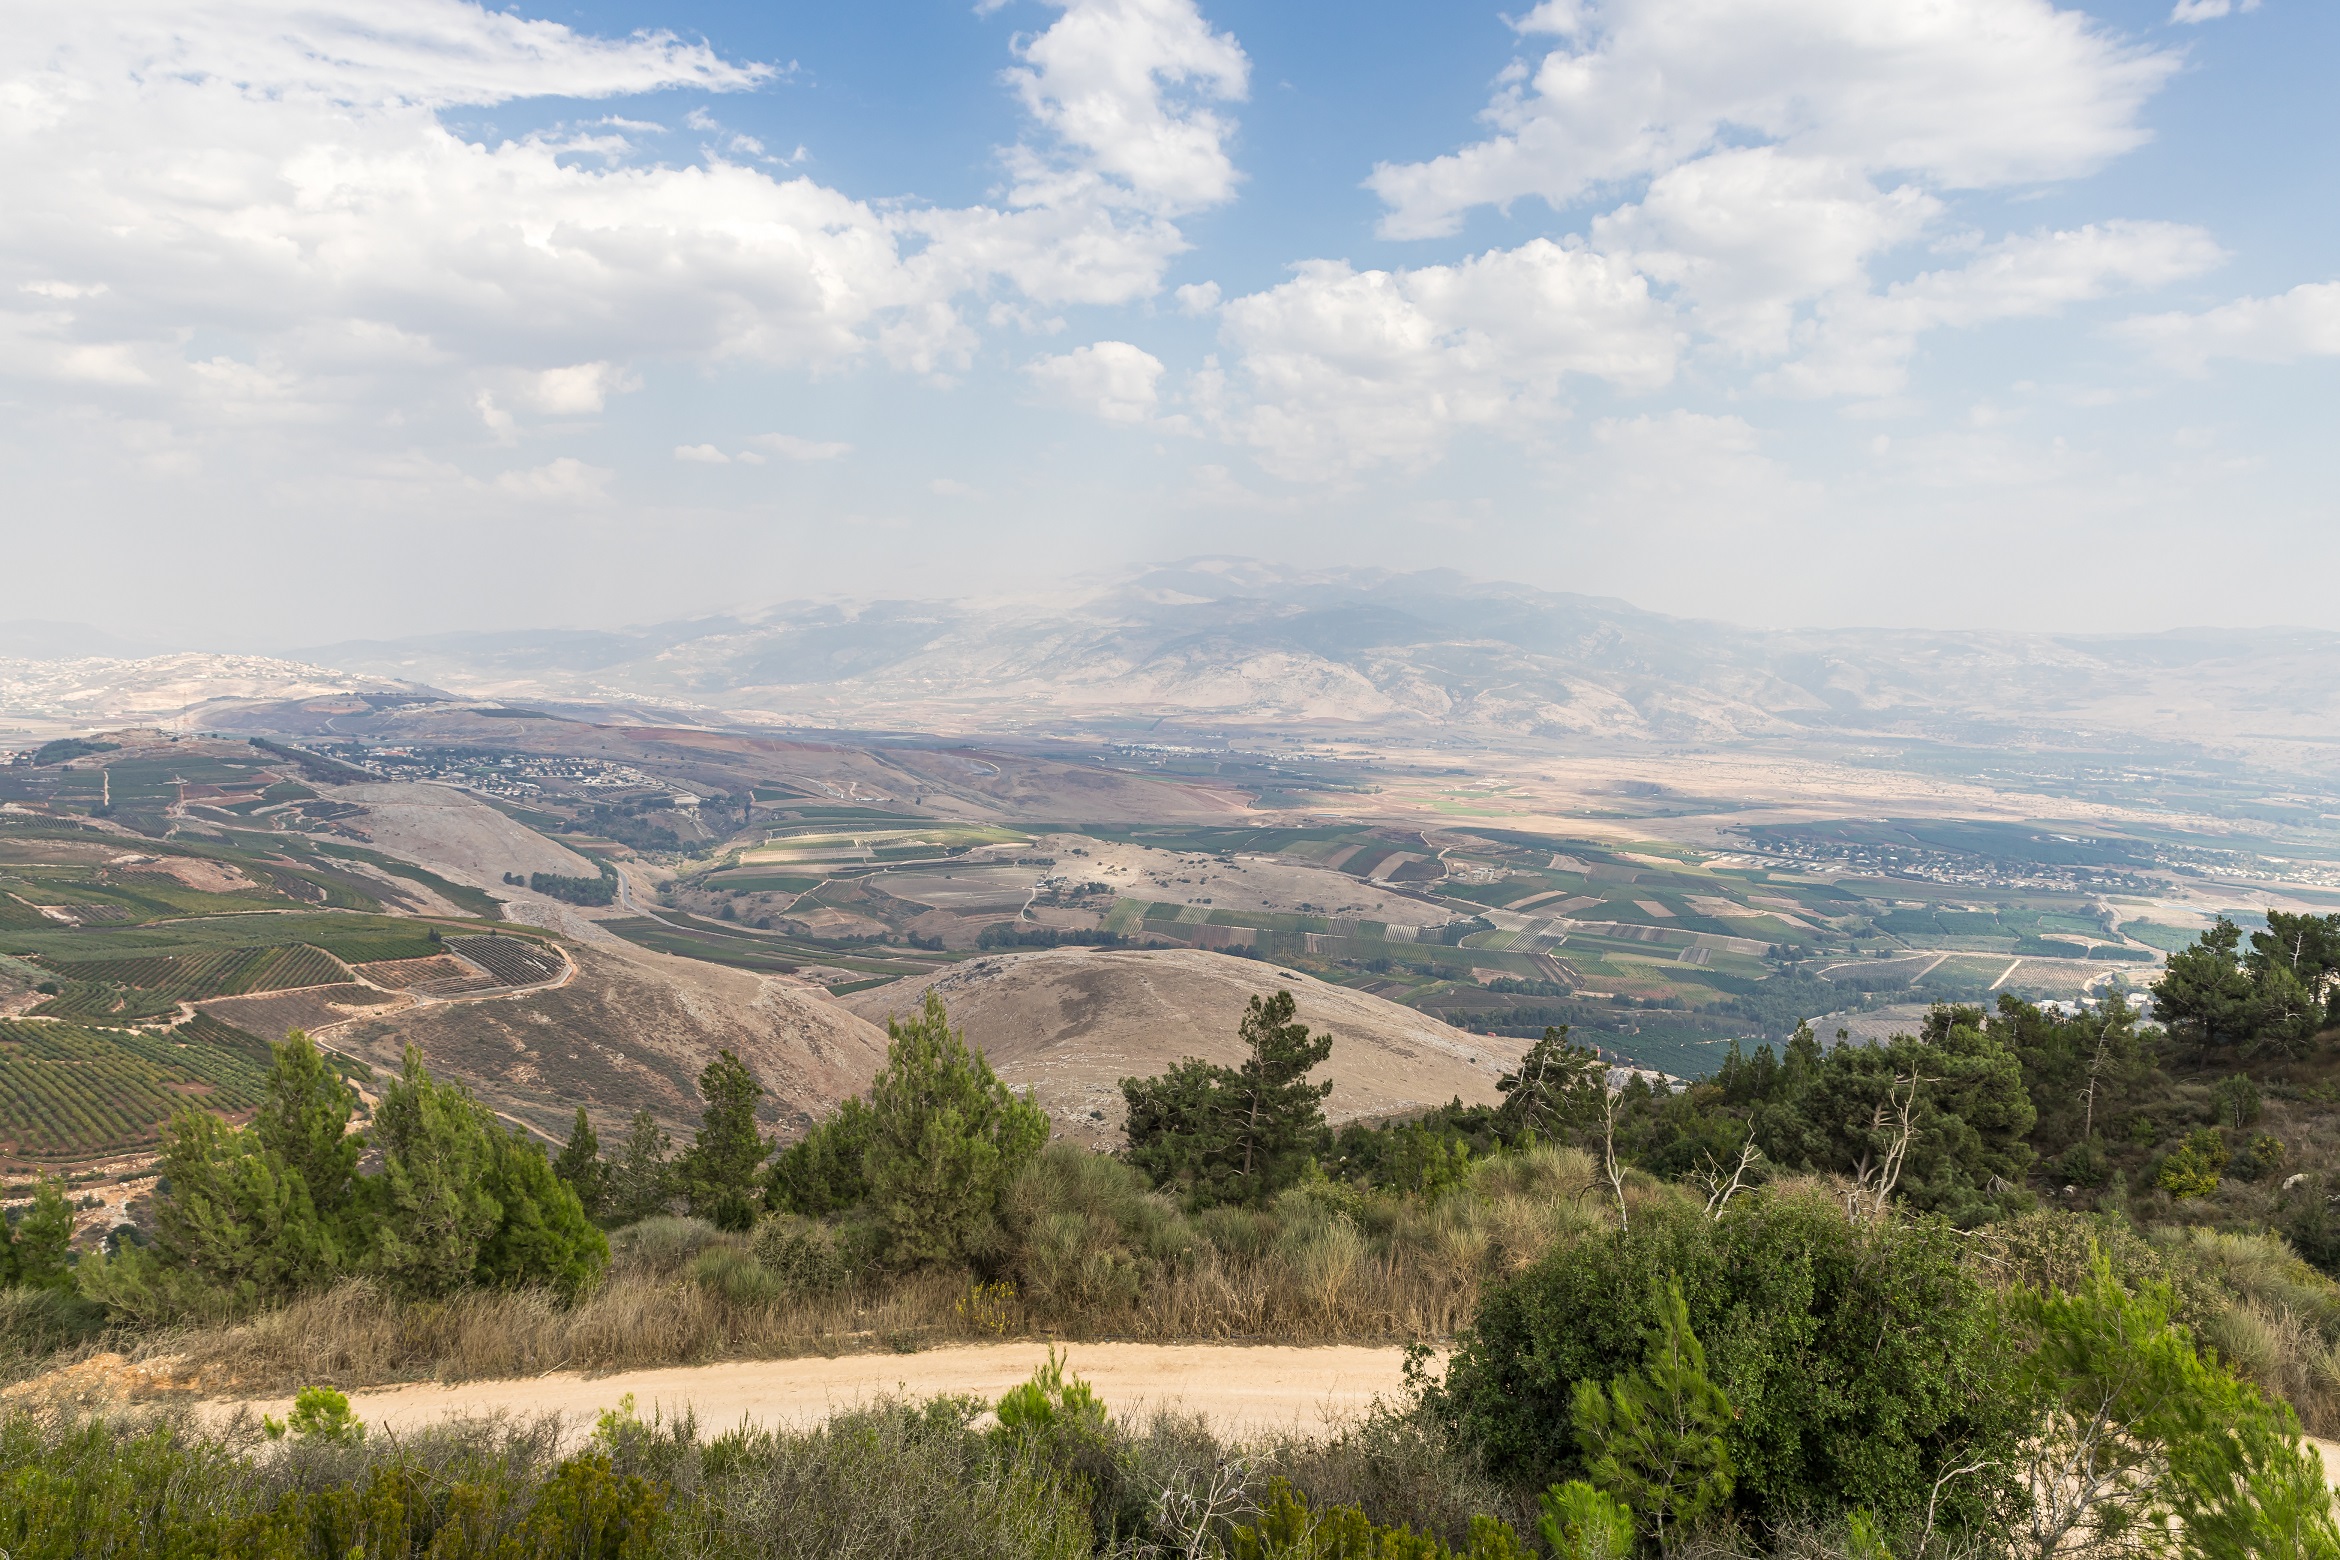 منطقة بانيا بالقرب من قرية مسجاف عام في الجليل الأعلى شمال فلسطين المحتلة قرب الحدود الشمالية مع لبنان. (shutterstock)